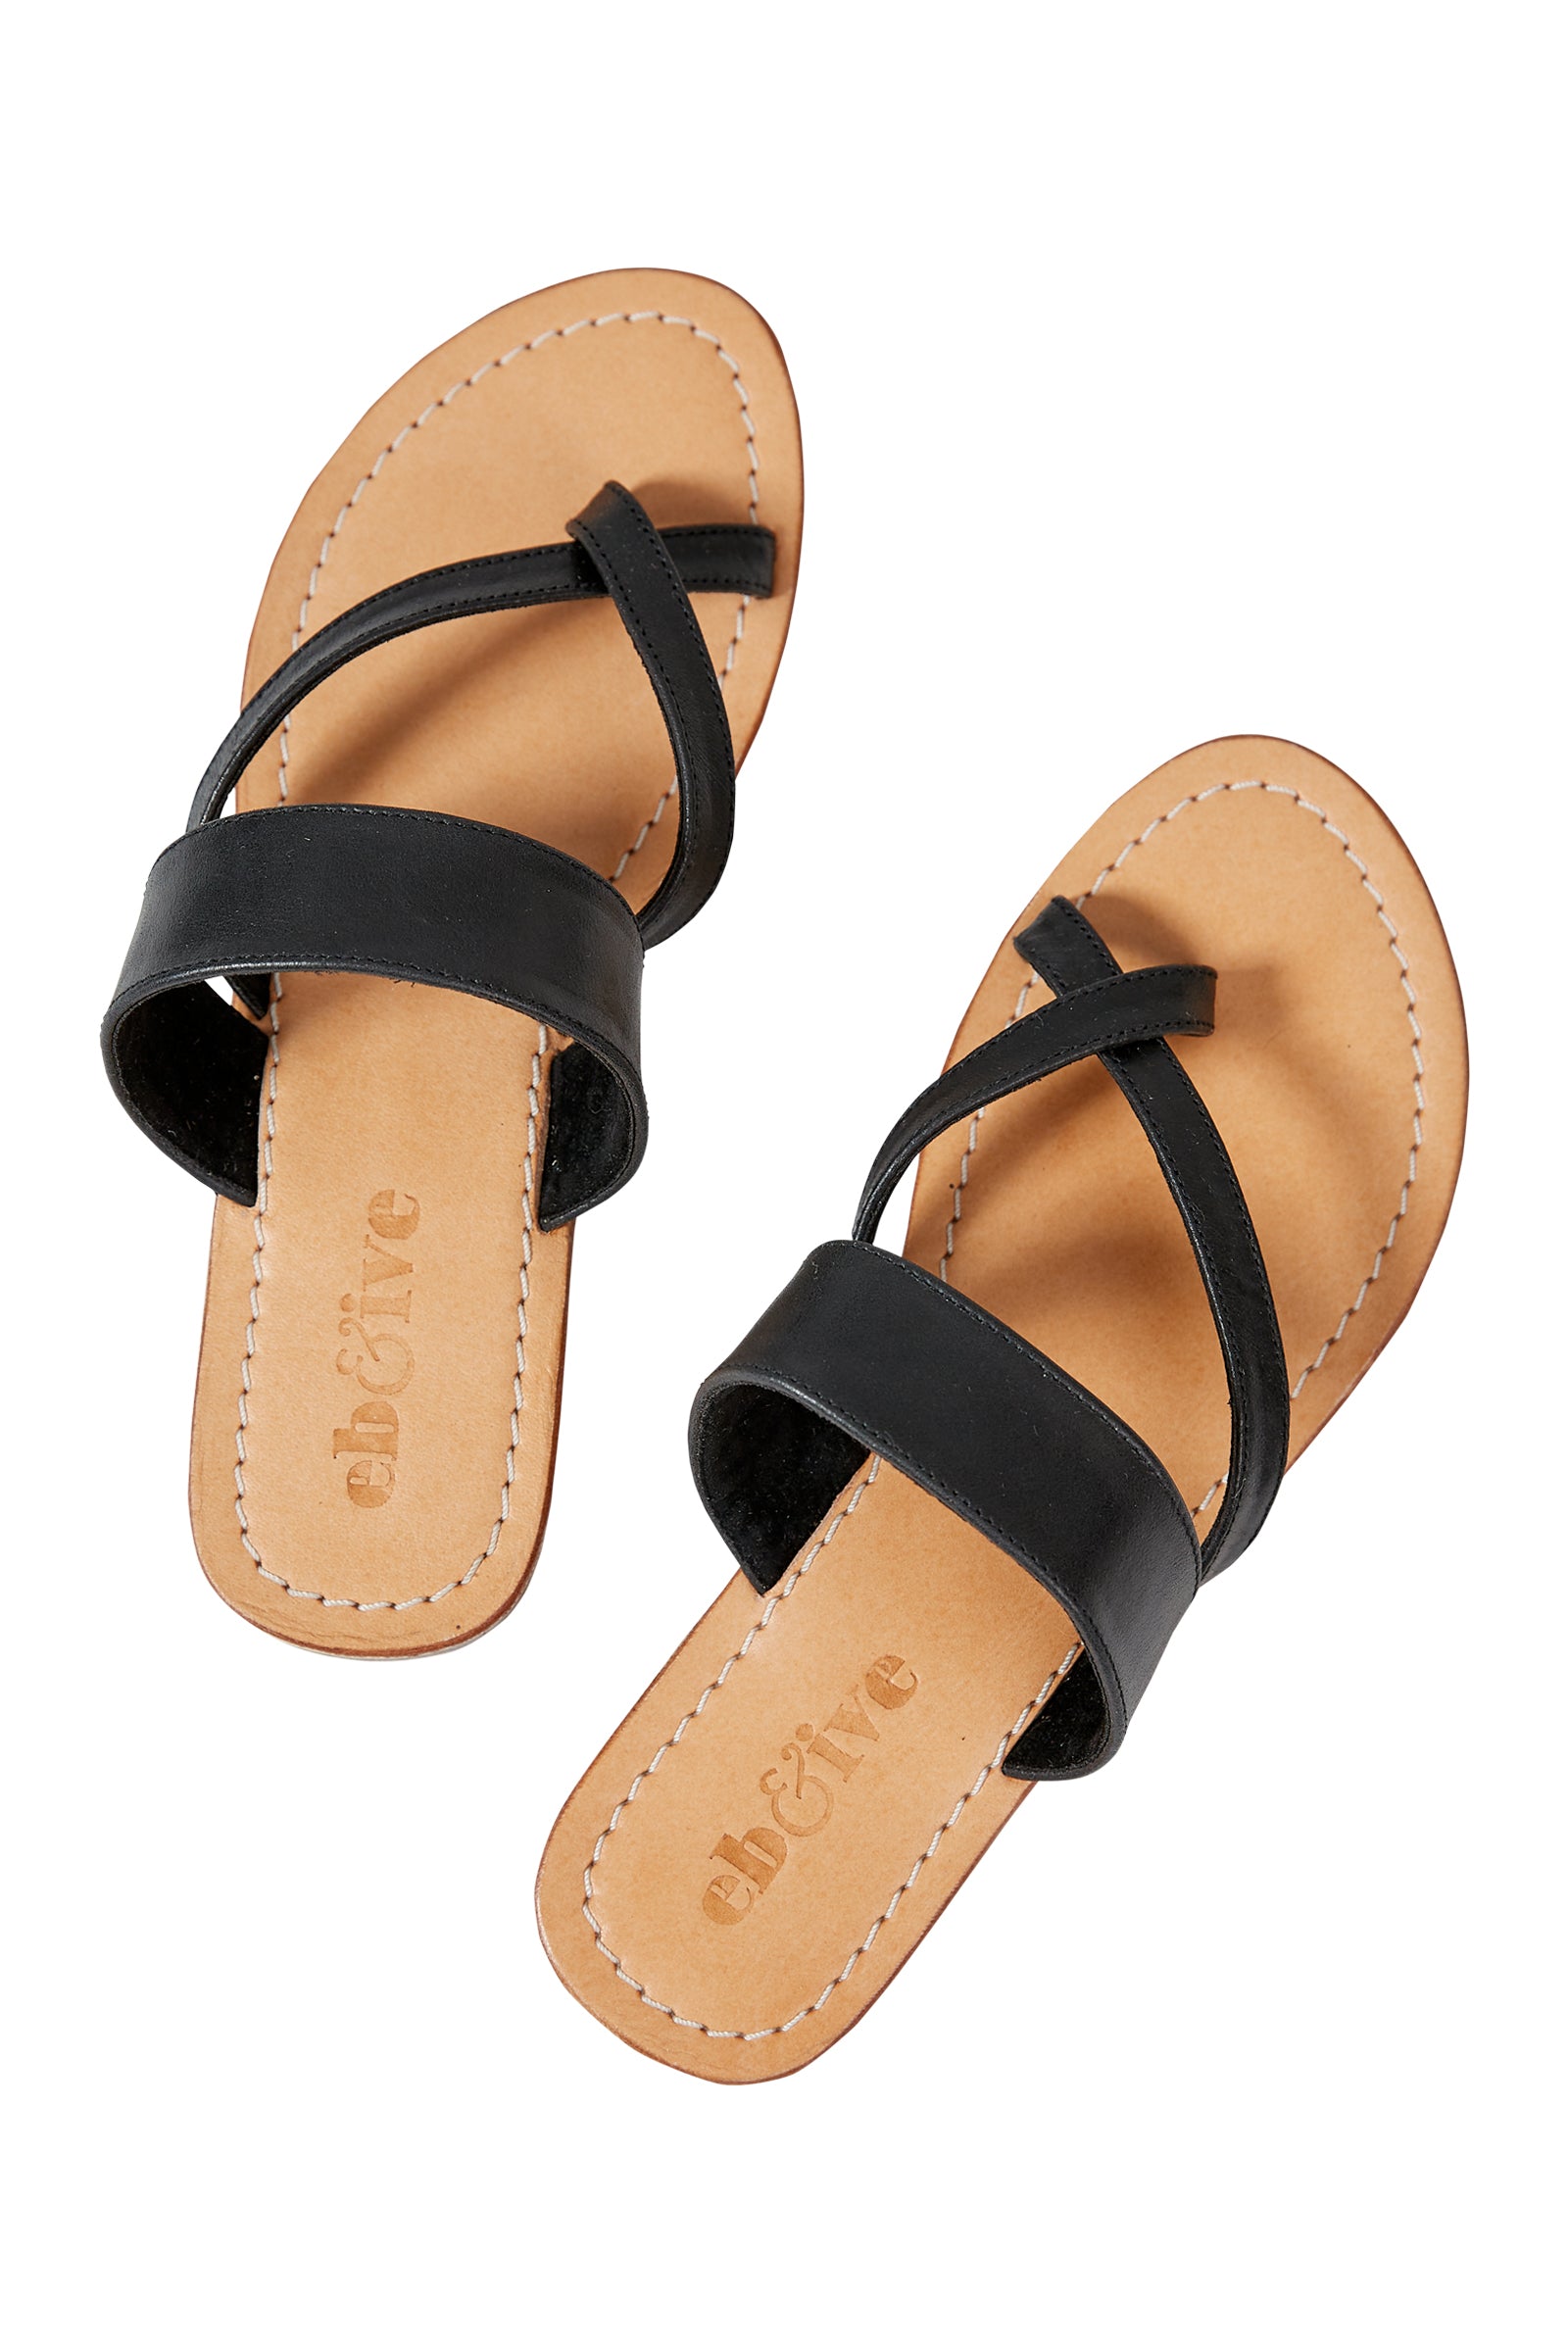 Verve Sandal - Black - eb&ive Footwear - Sandals